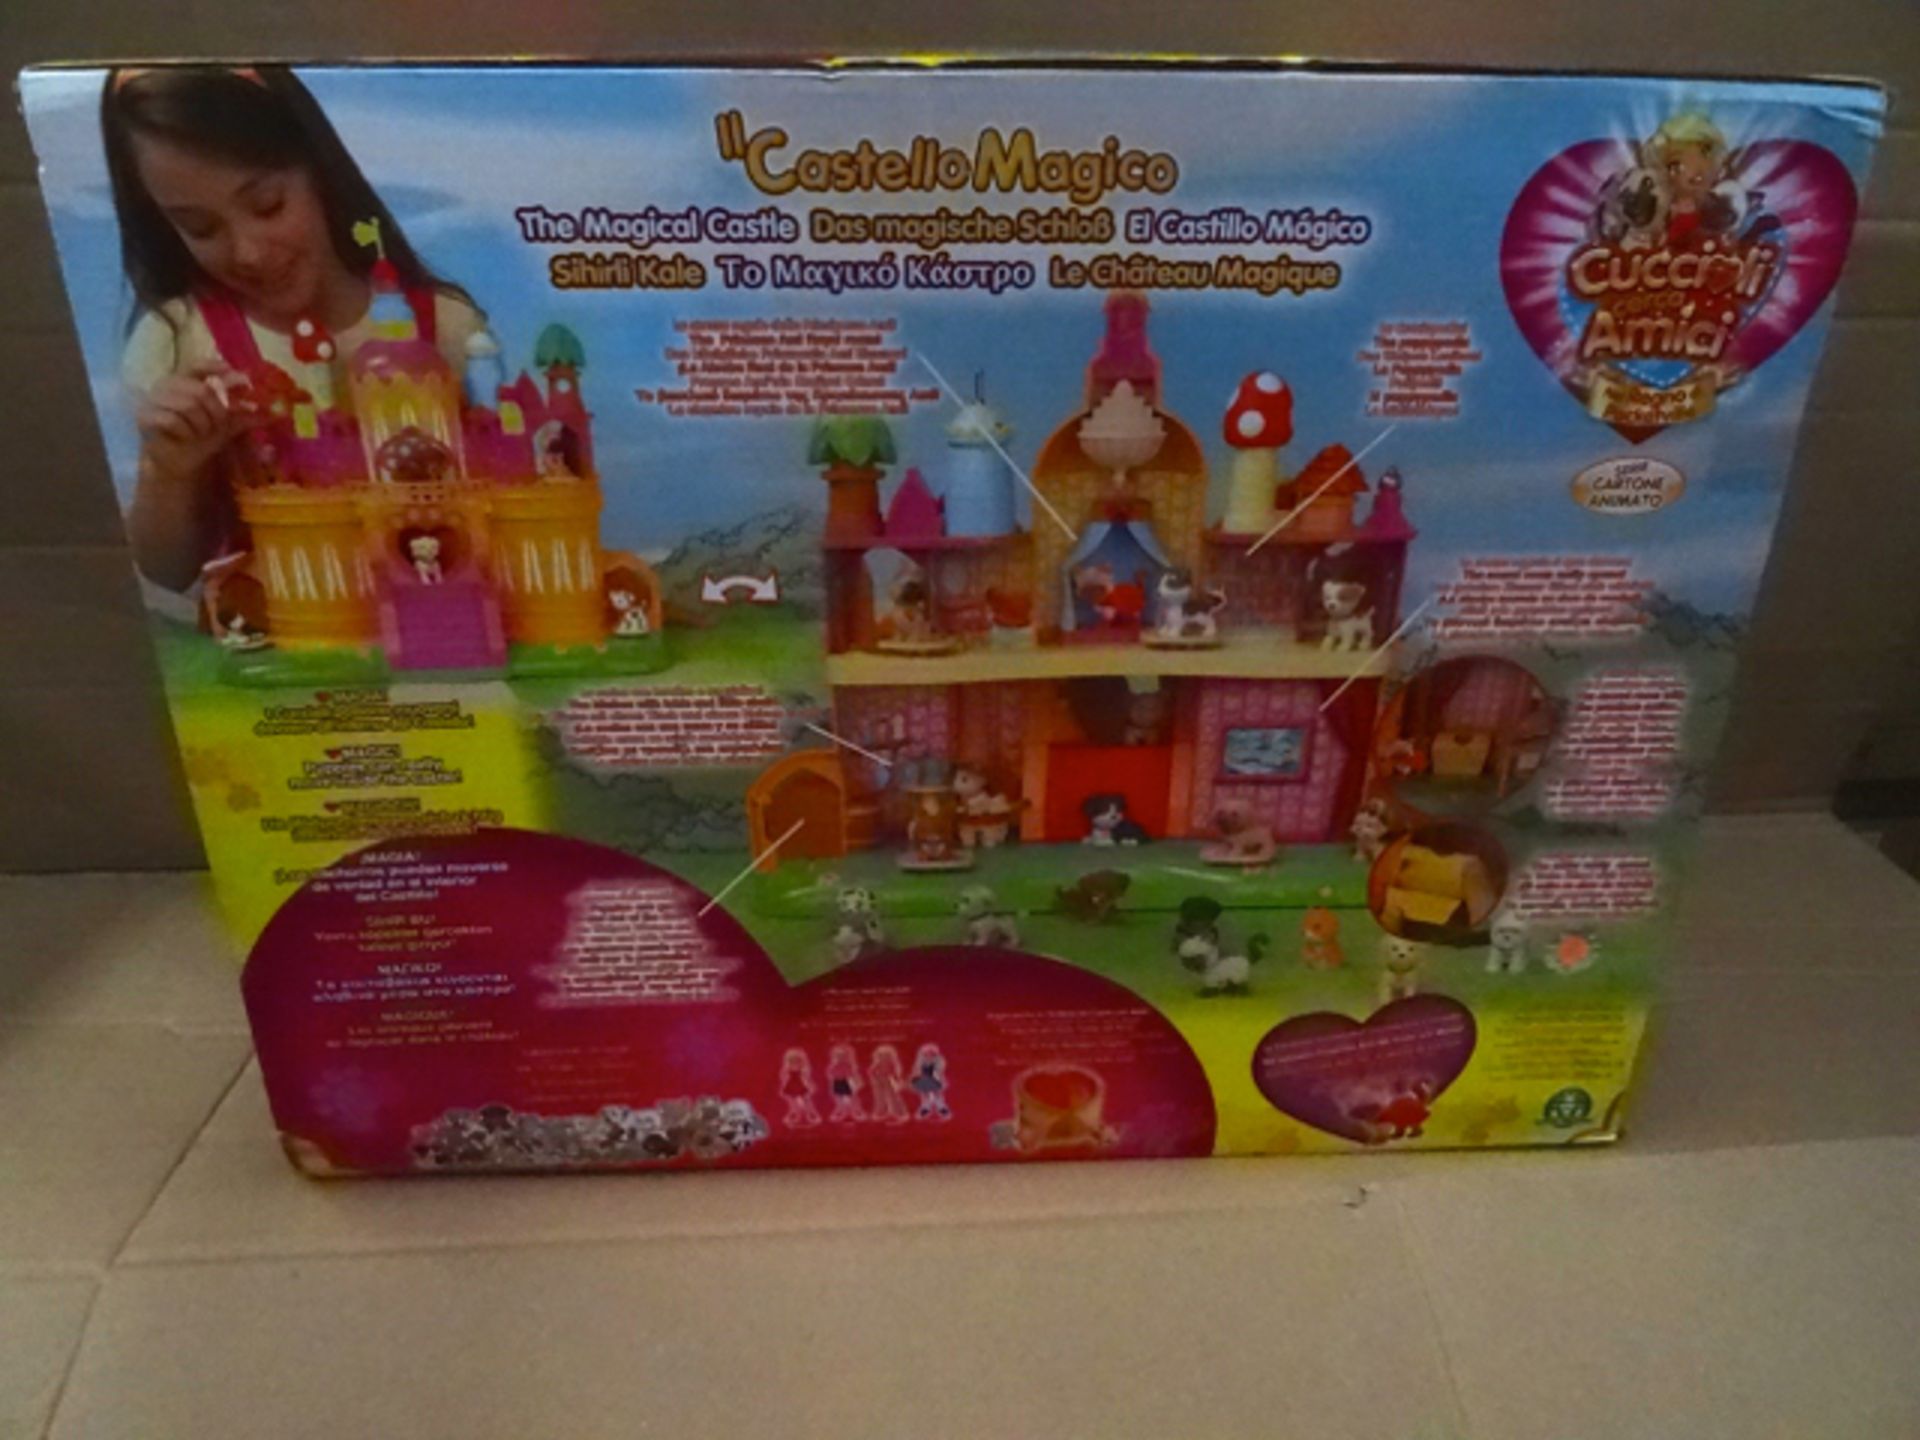 4 x Cuccili Cerca Amici Castle Magico Large Kids Play set castles! RRP £79.99 Each! Total RRP £319. - Bild 4 aus 4